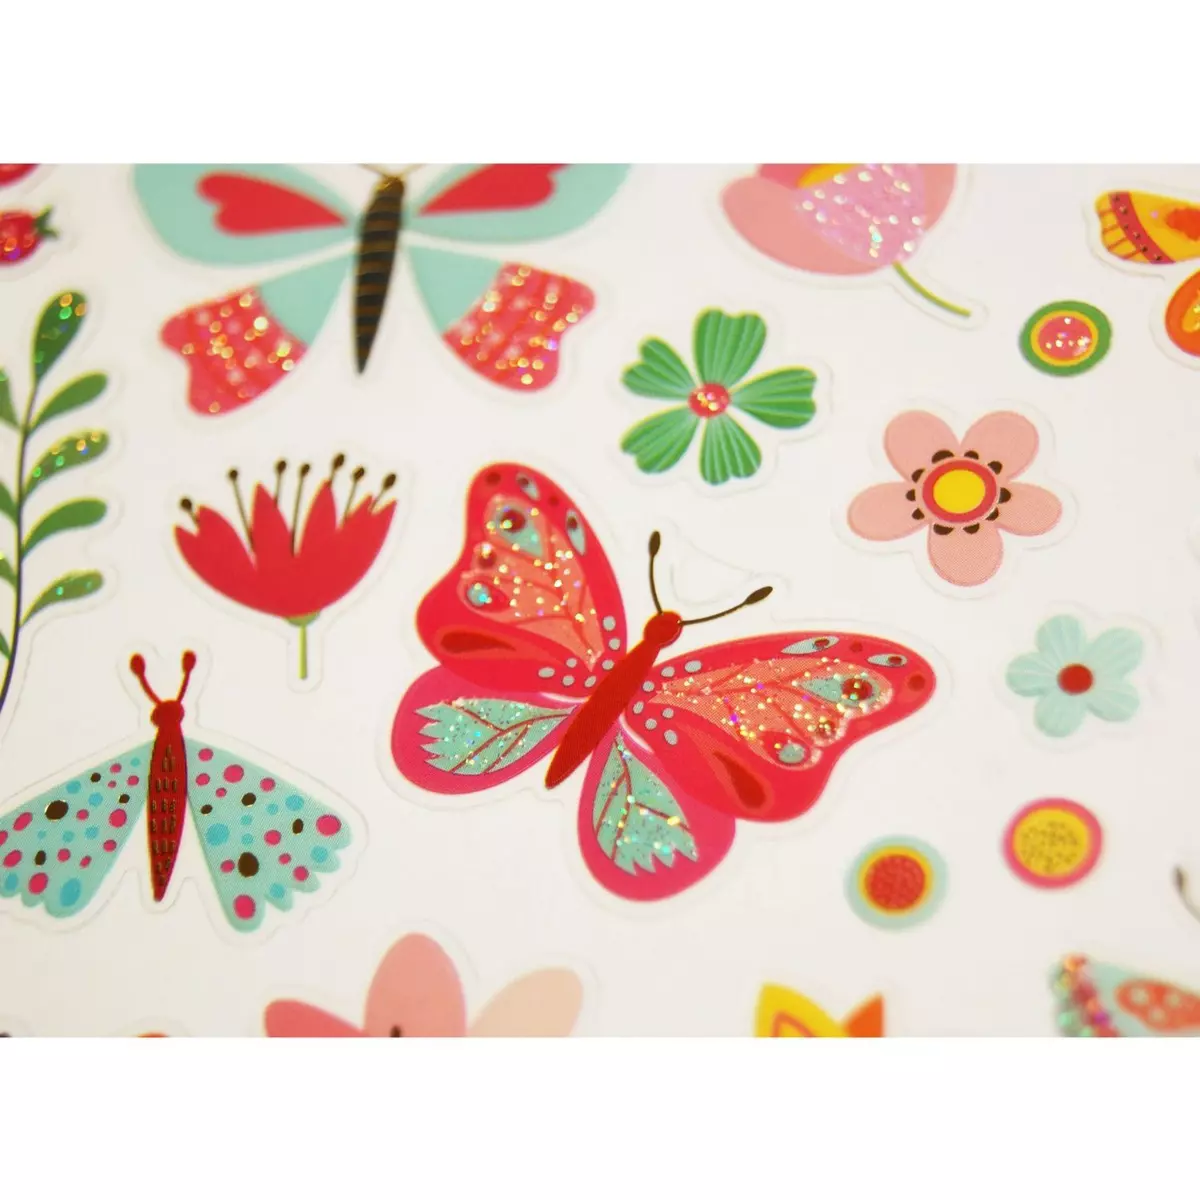  Autocollants - Le printemps - Papillons et fleurs - Dorures et paillettes